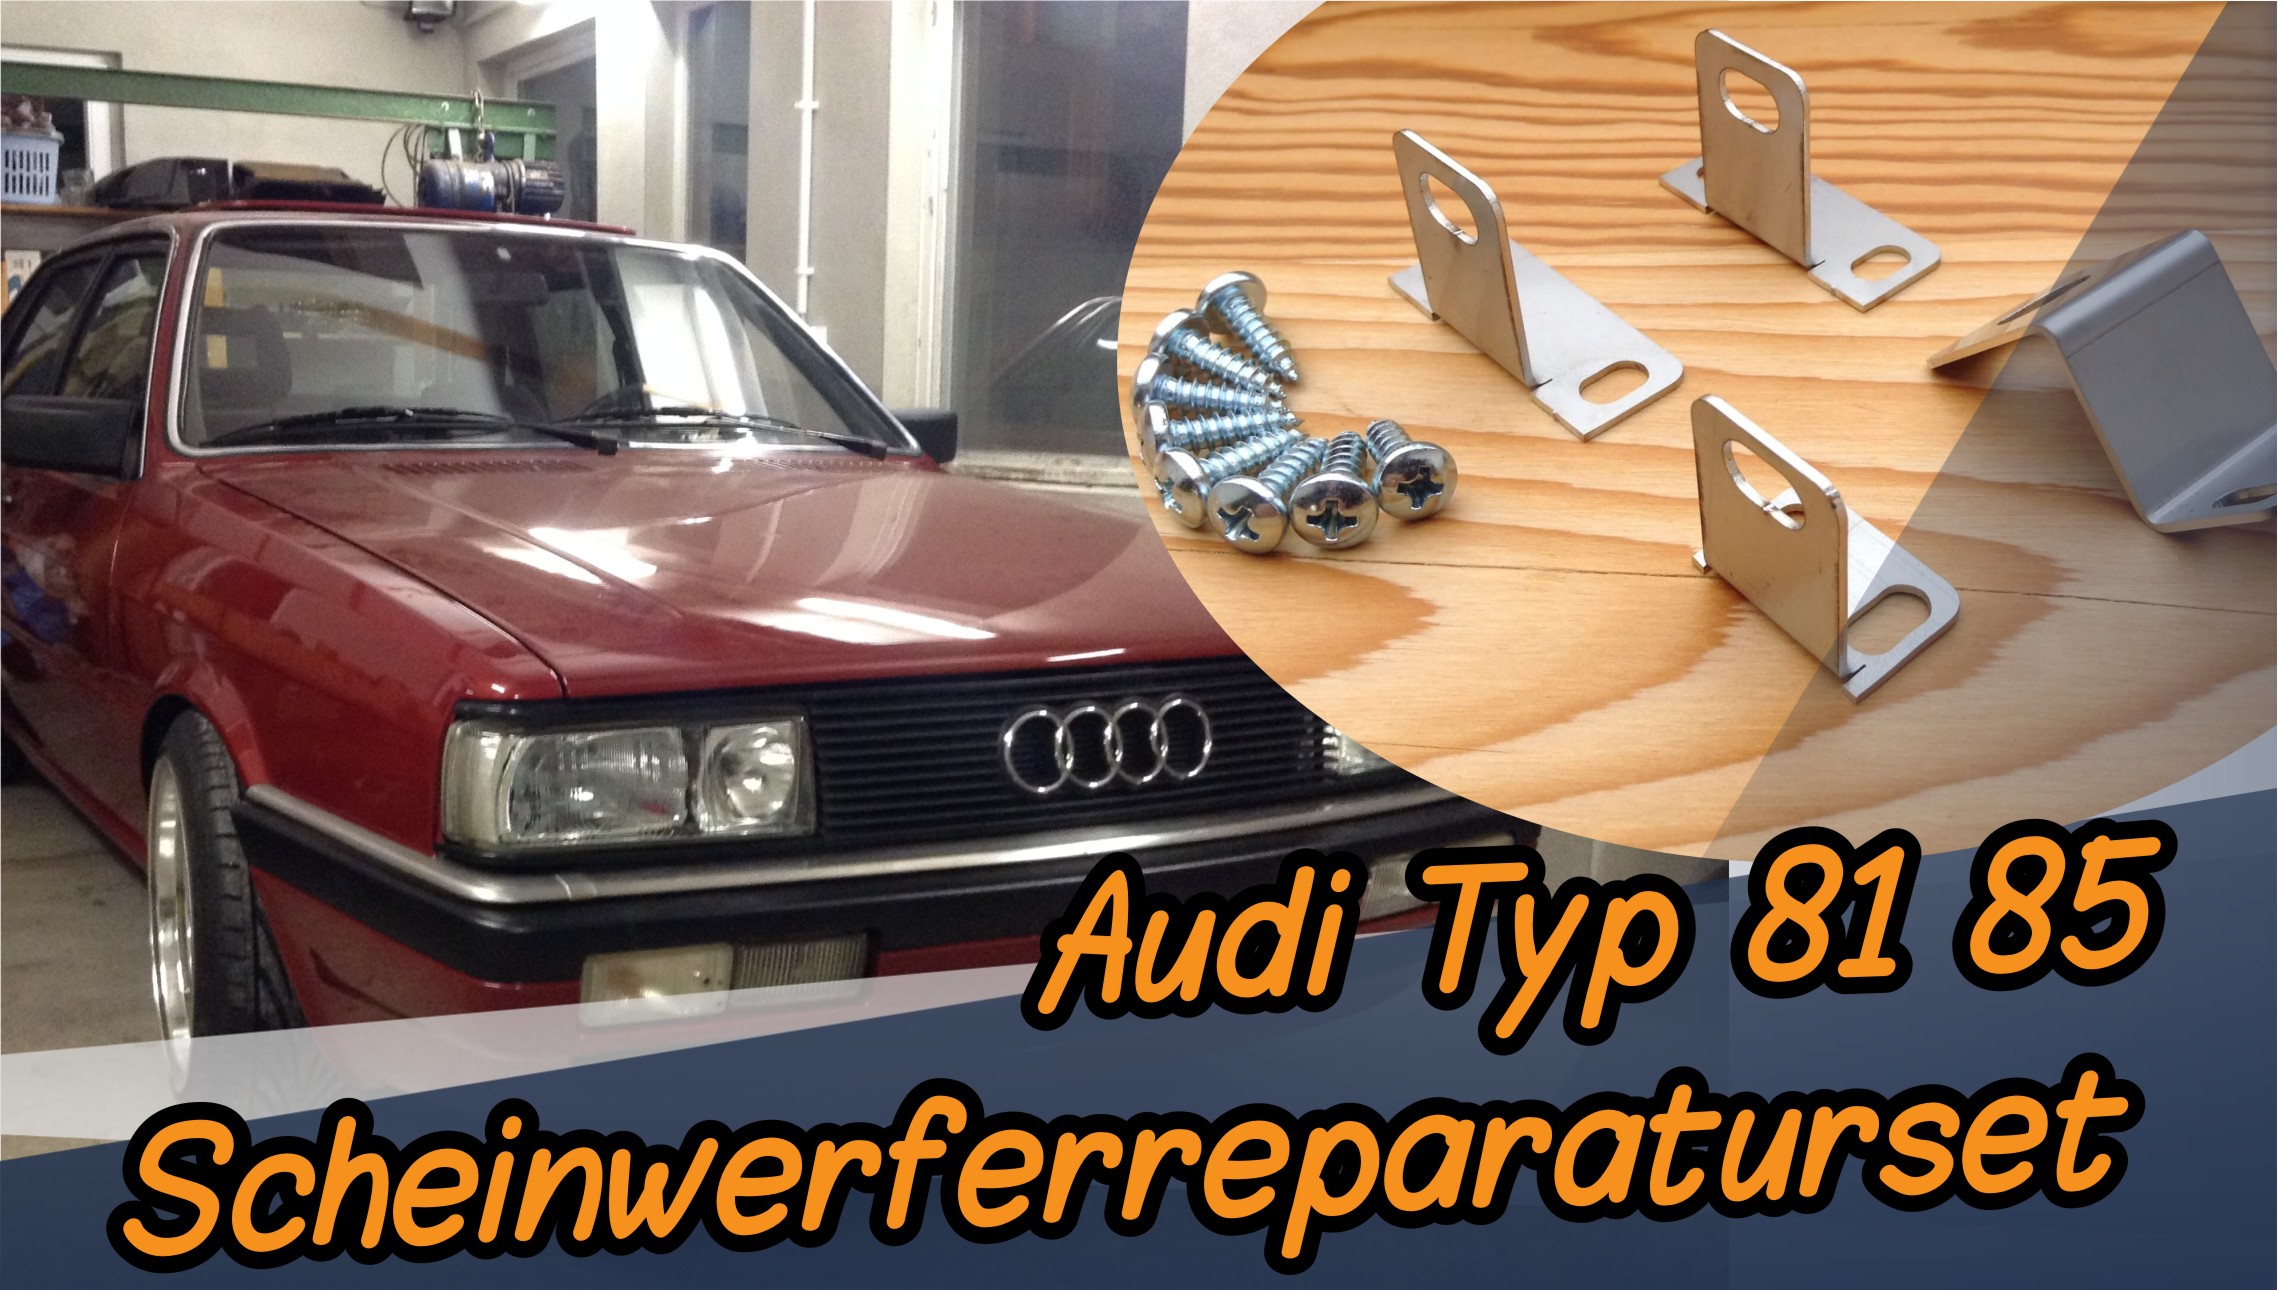 Audi Typ 81 Scheinwerfer Reparatur Set